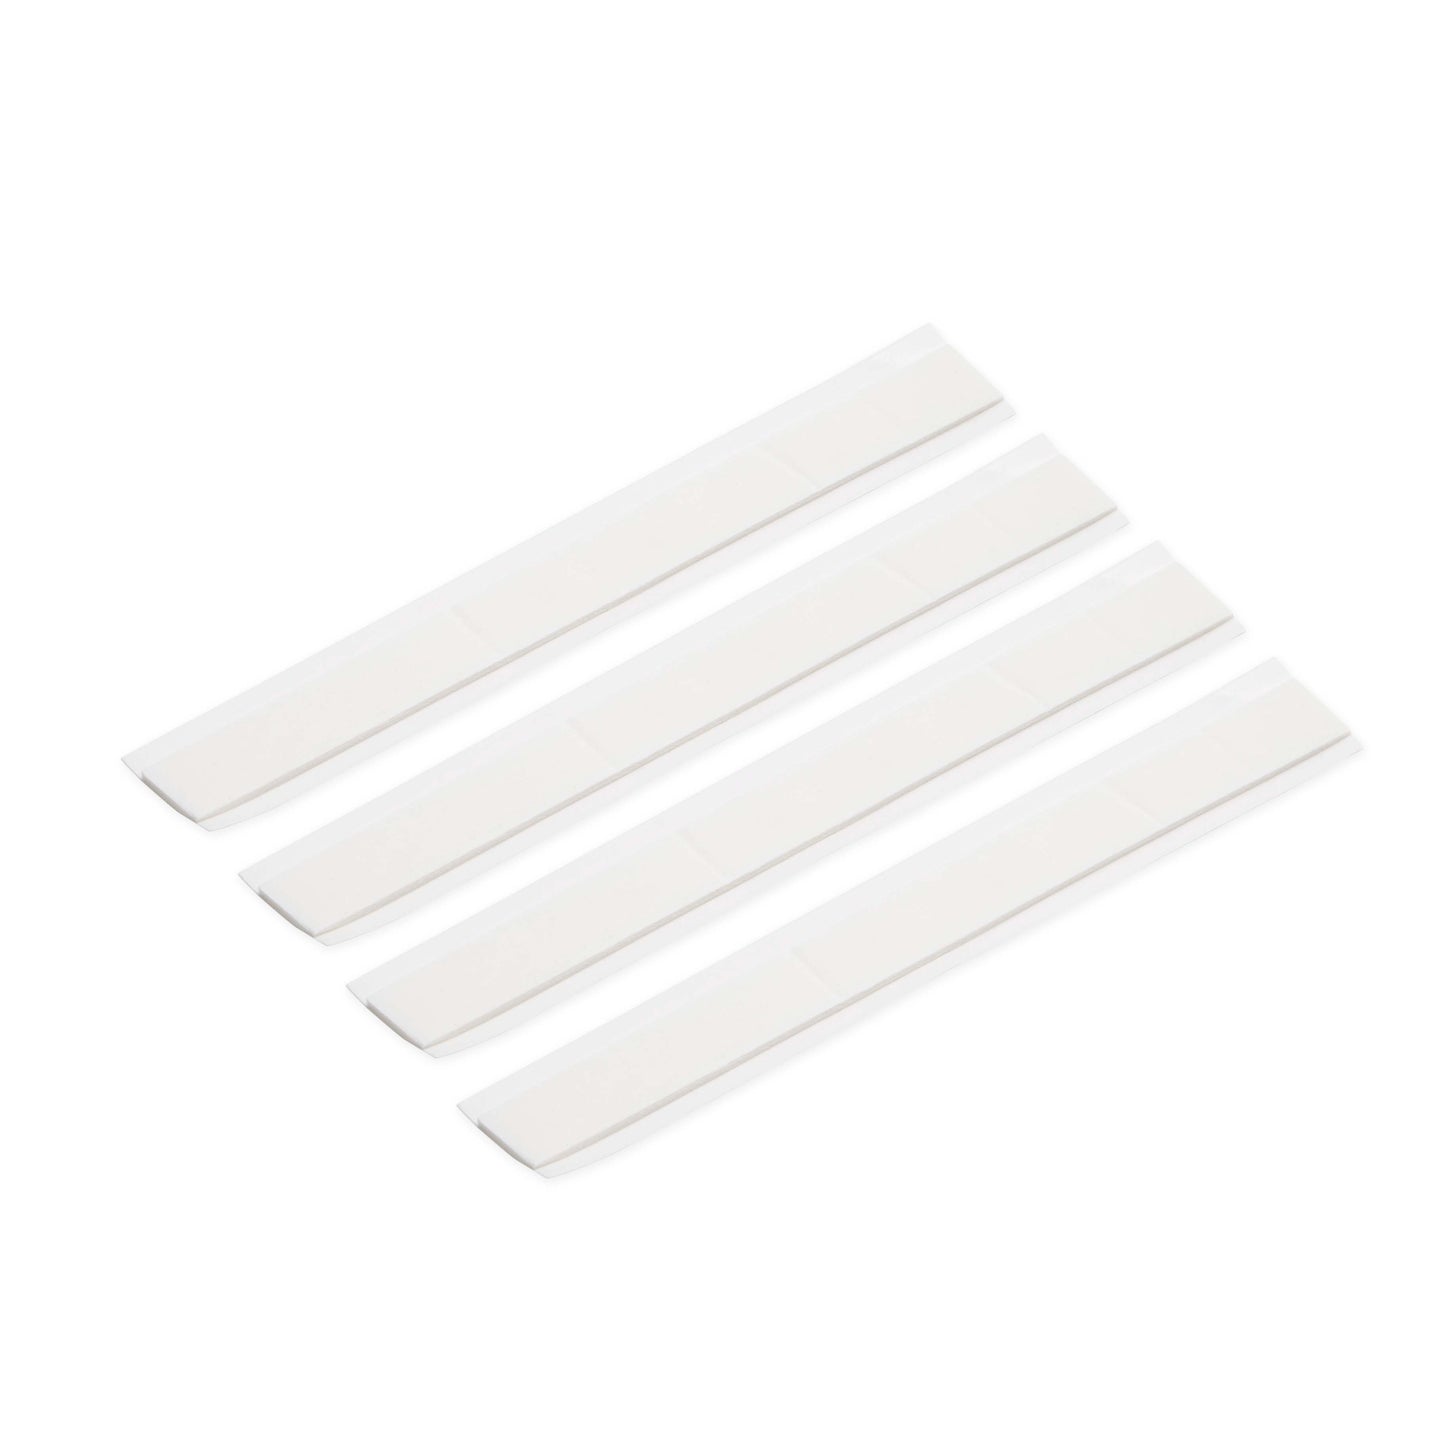 Double-Sided Foam Tape Strips